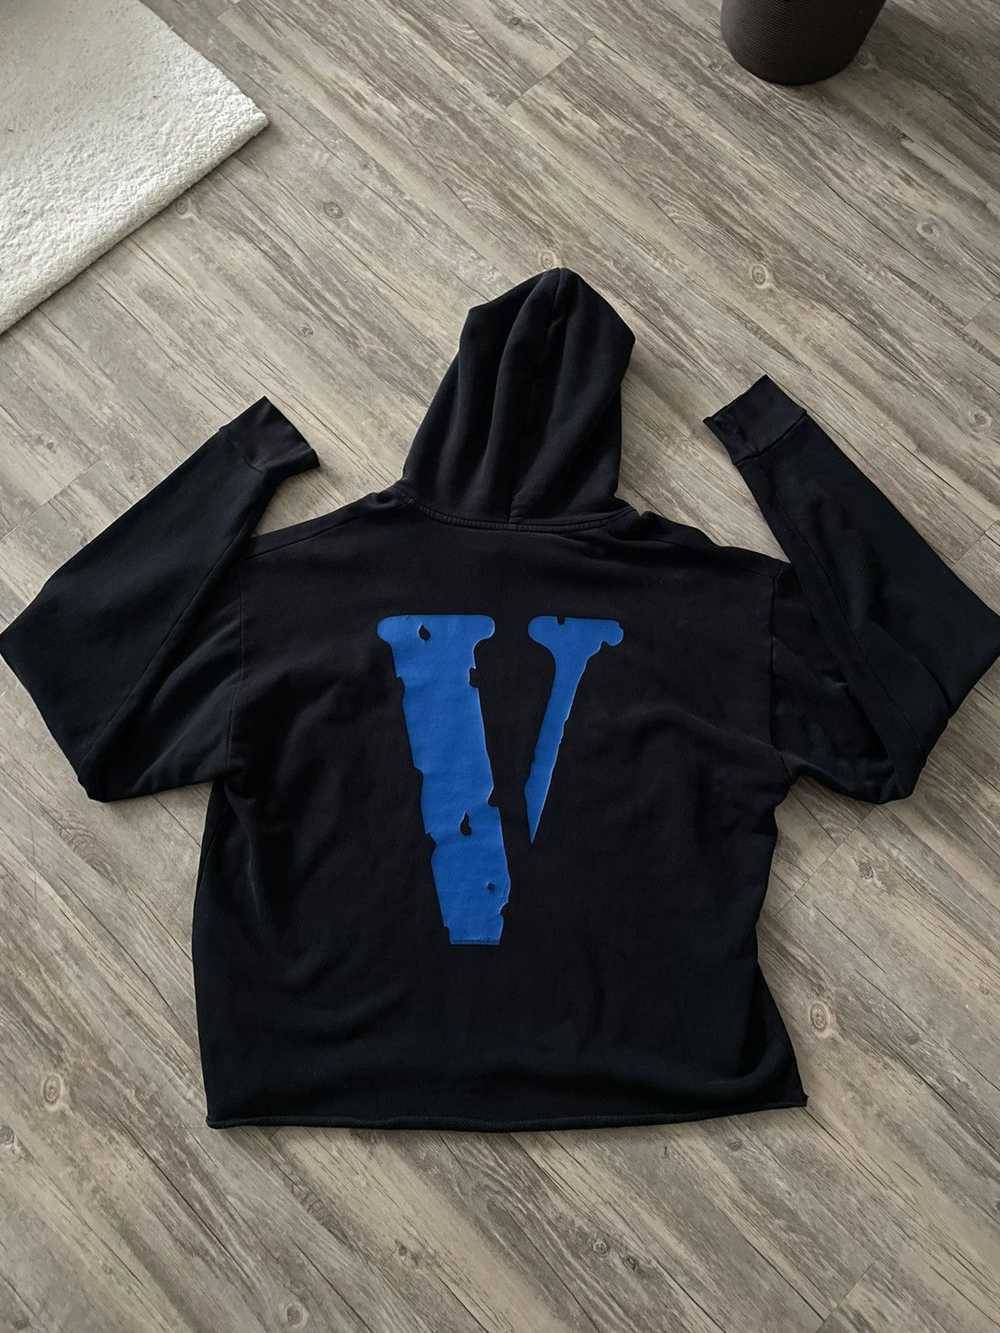 Vlone Vlone og blue hoodie - image 2